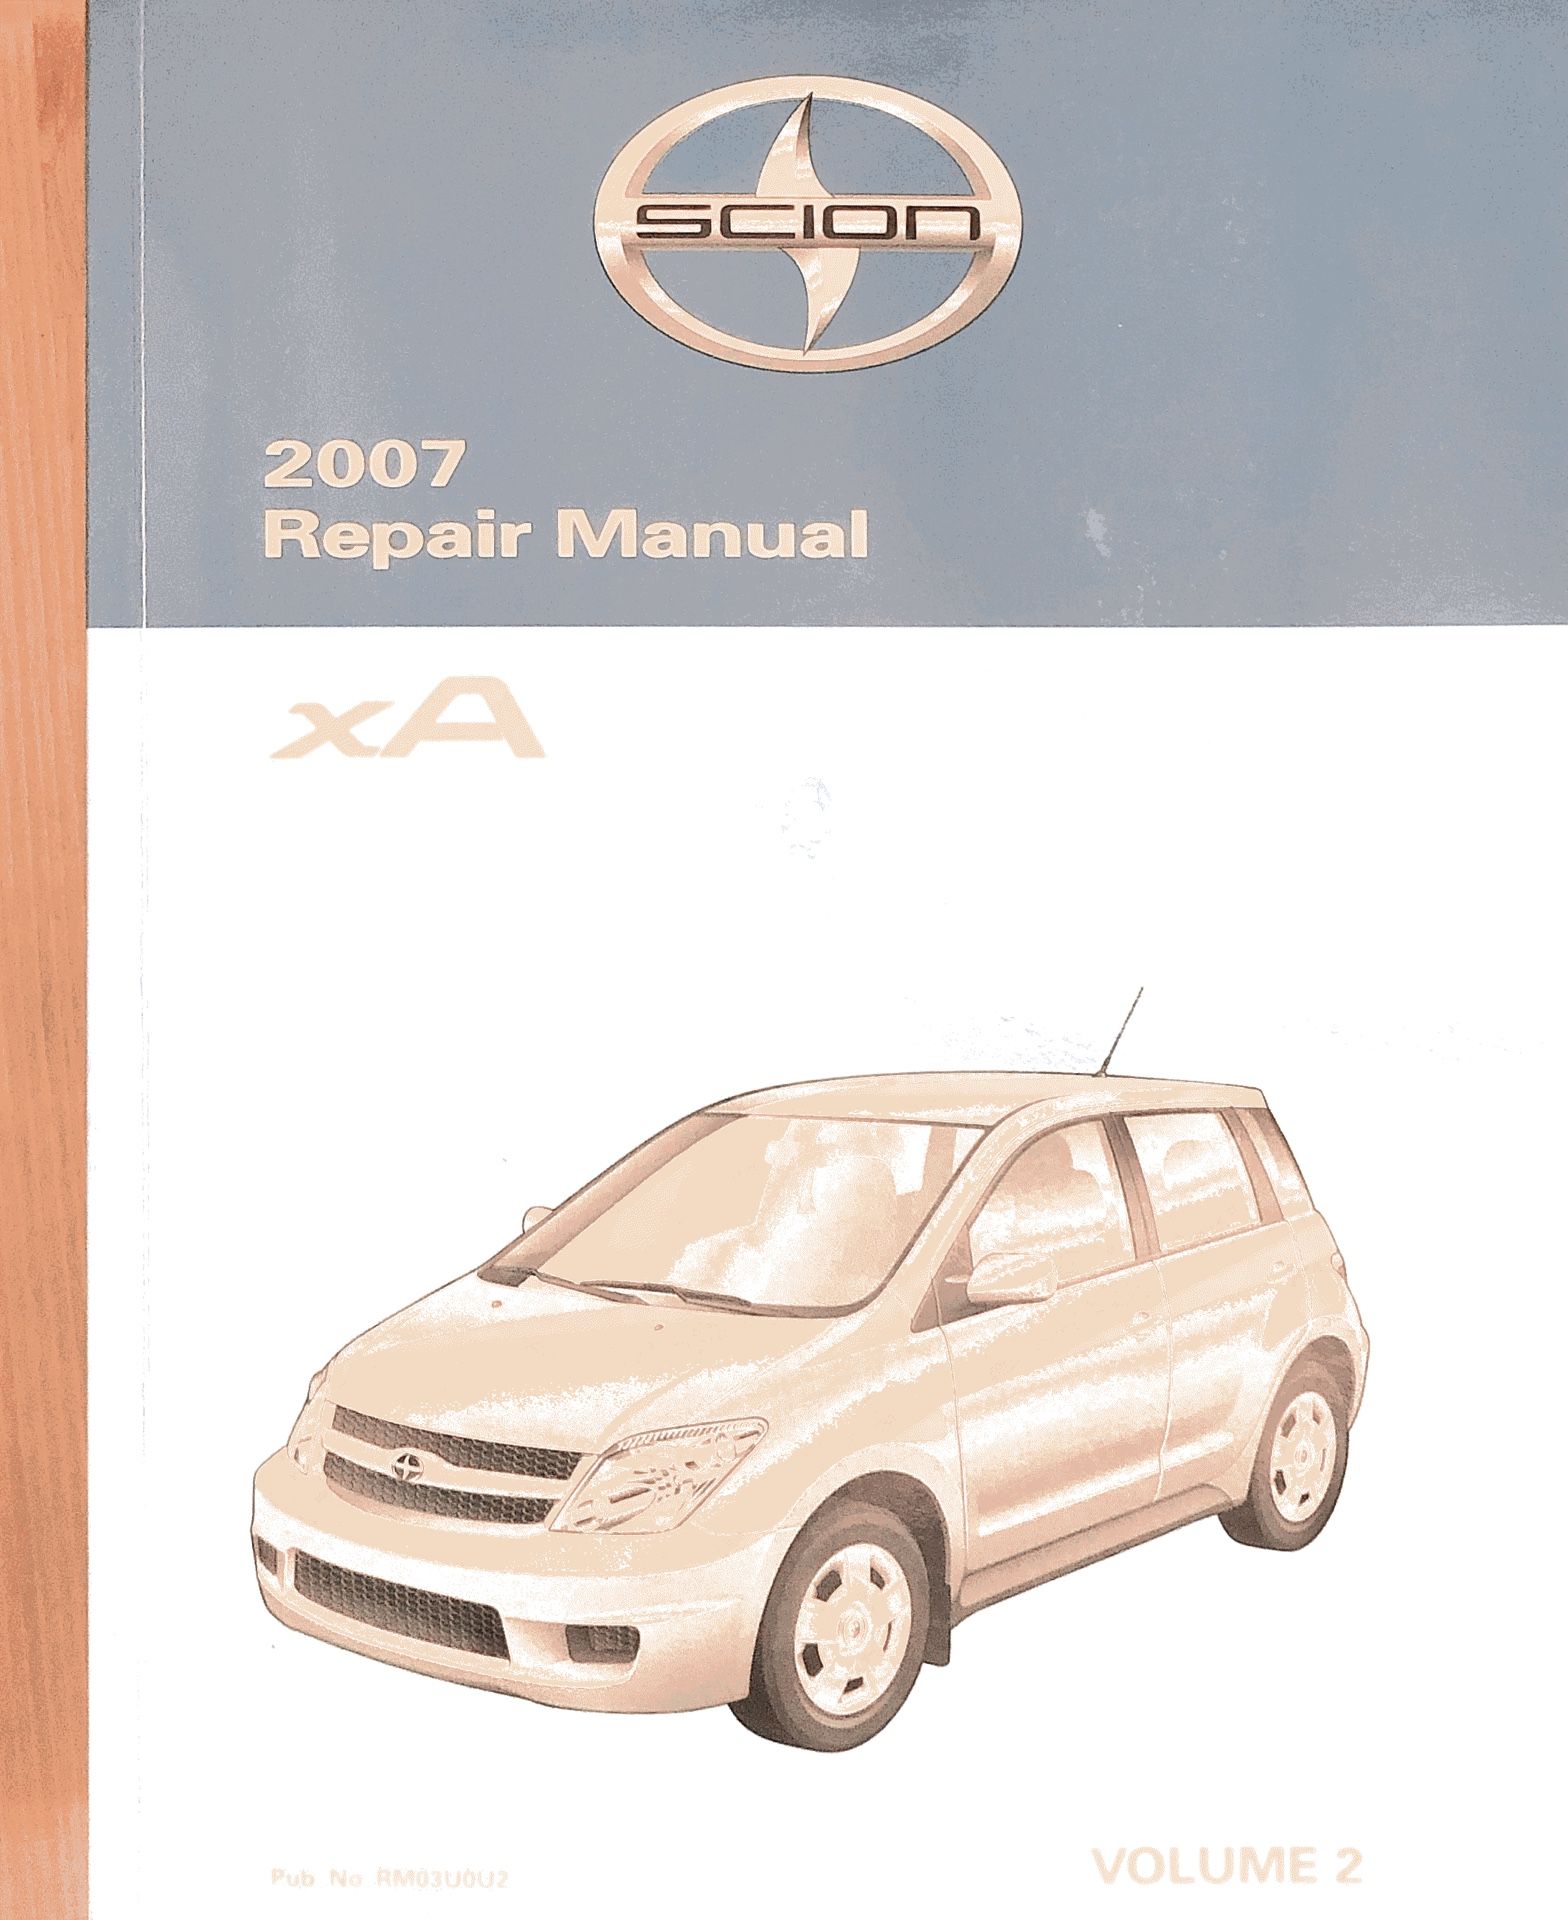 2007 Scion XA Repair Manual Vol. 2